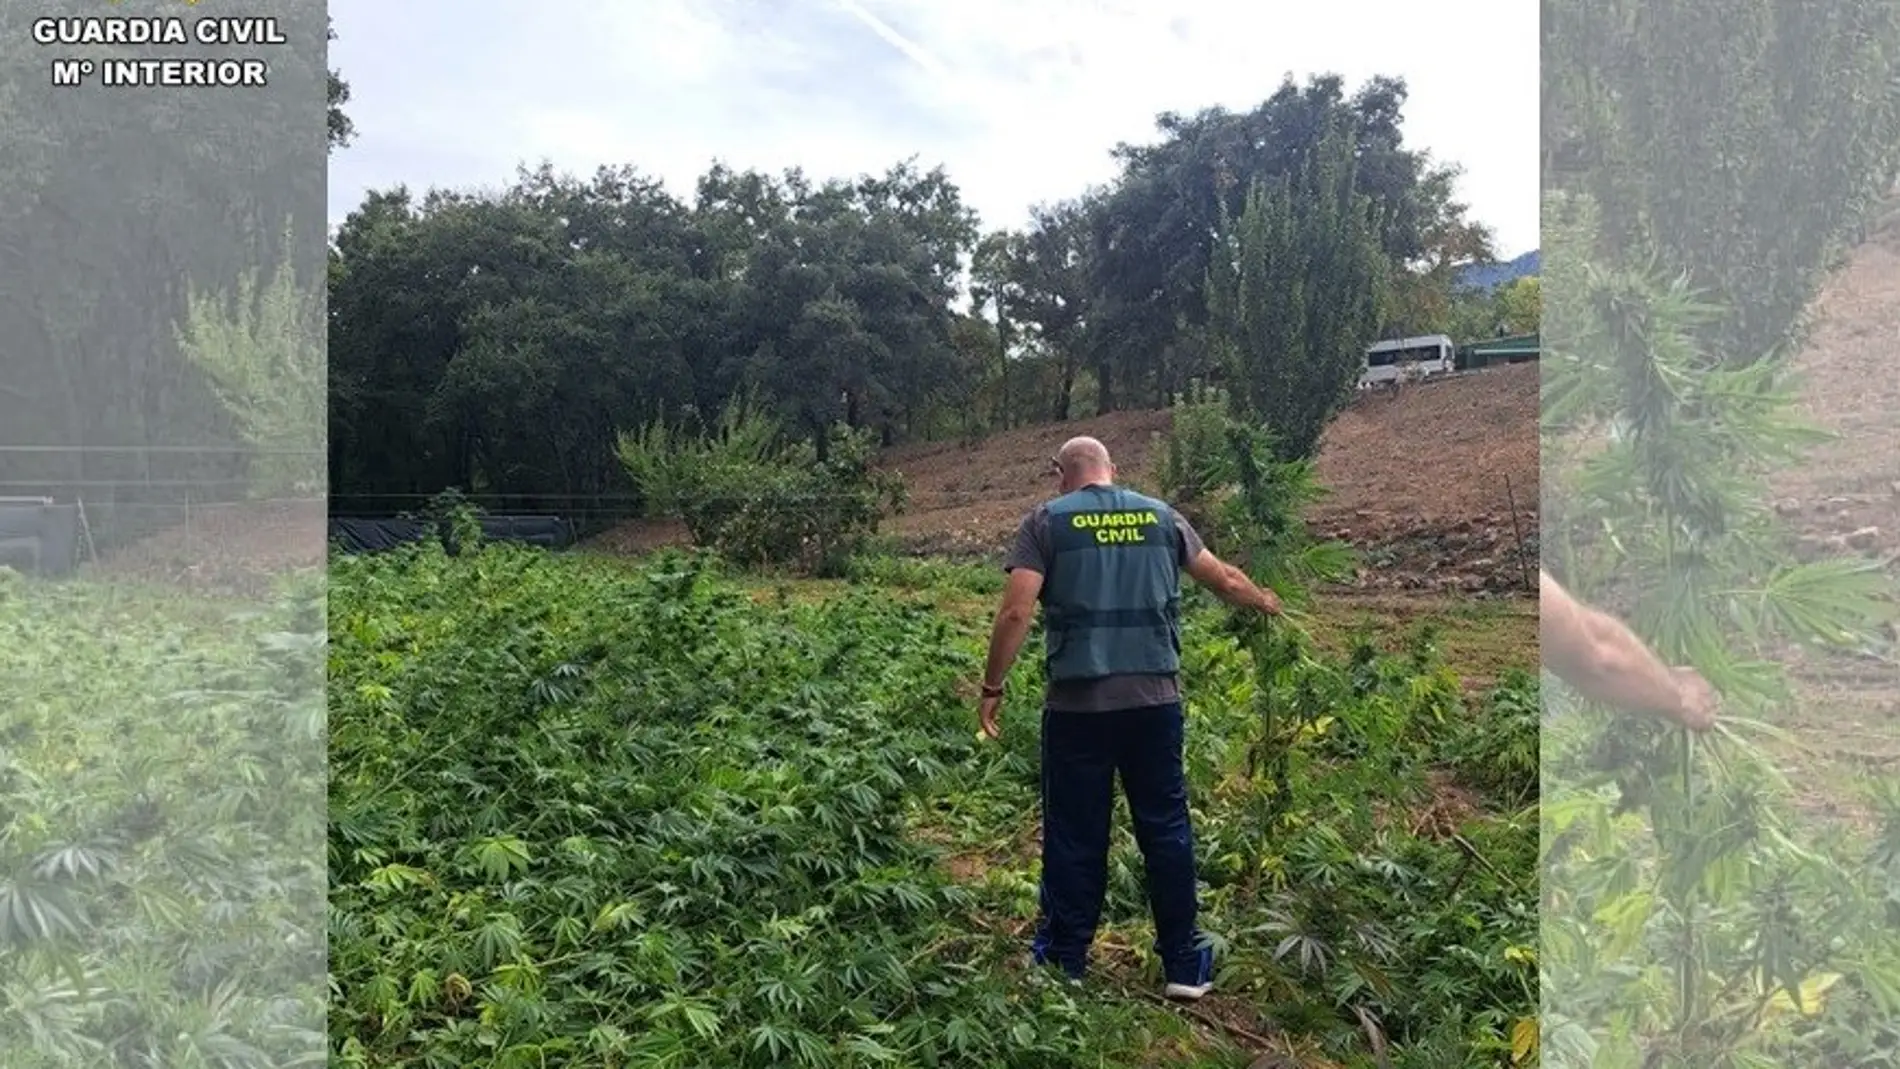 Plantación de marihuana localizada en Fuencaliente